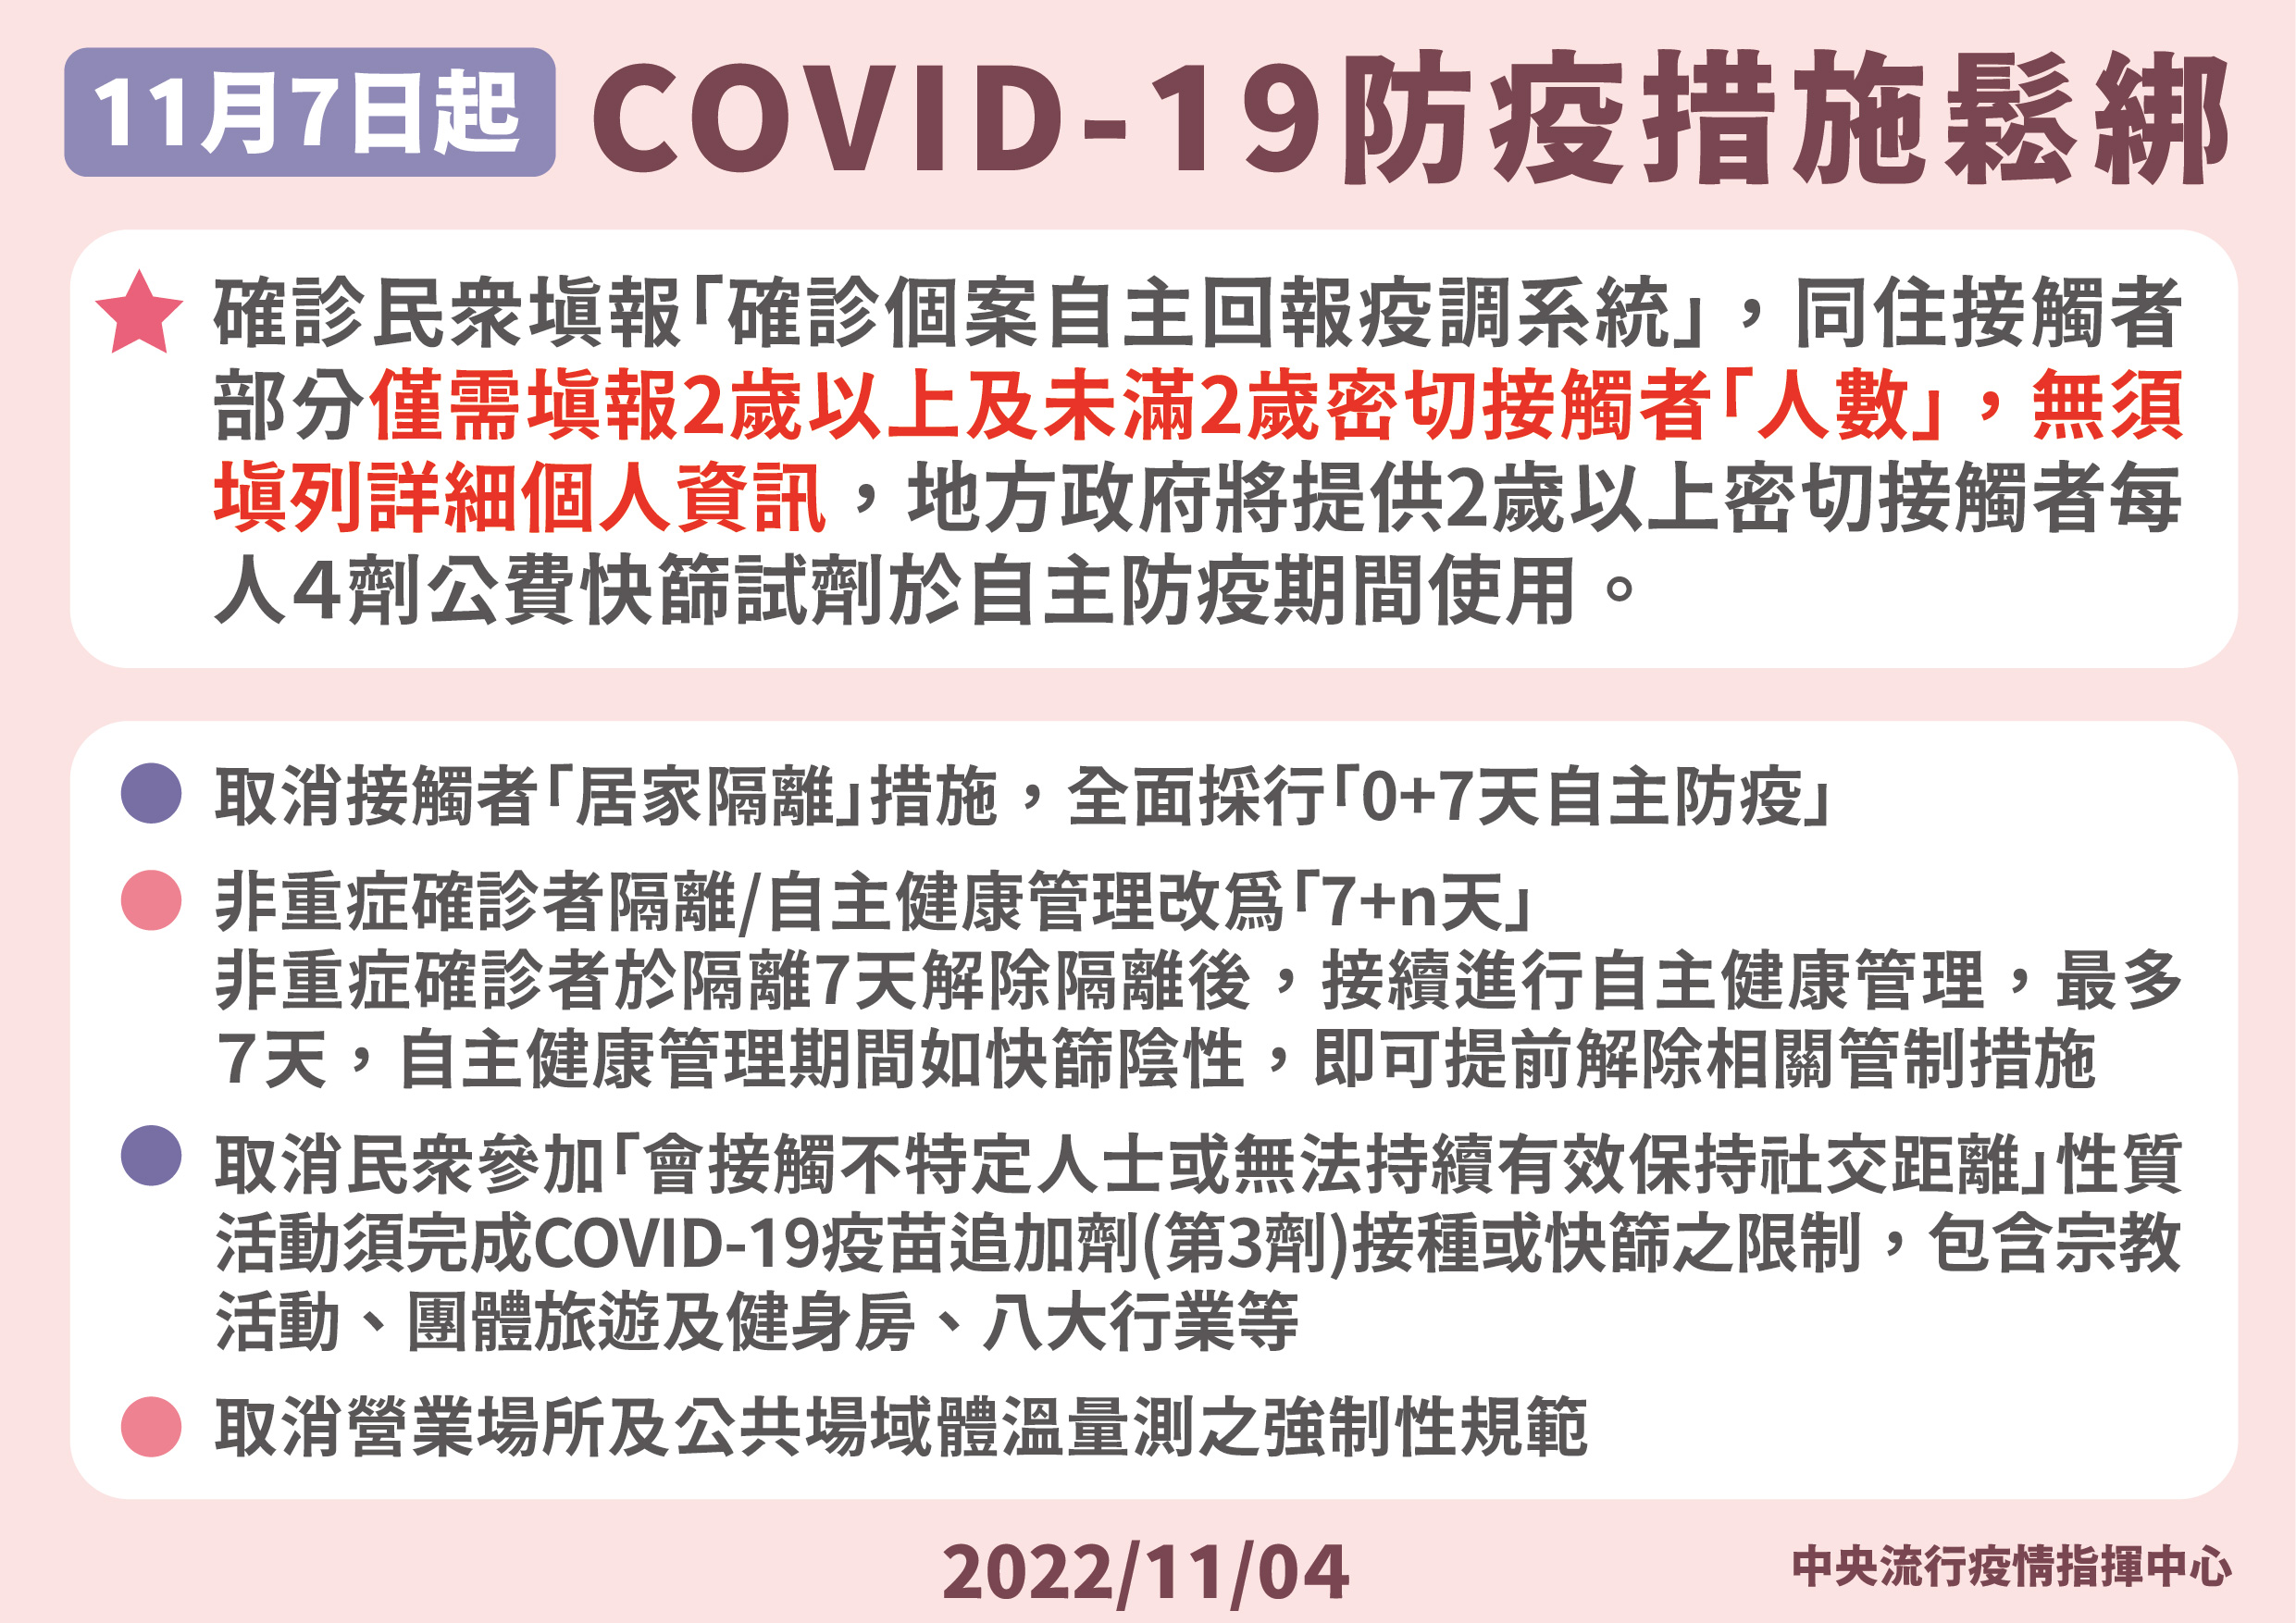 調整COVID-19接觸者及確診者管制措施取消部分社區防疫規範